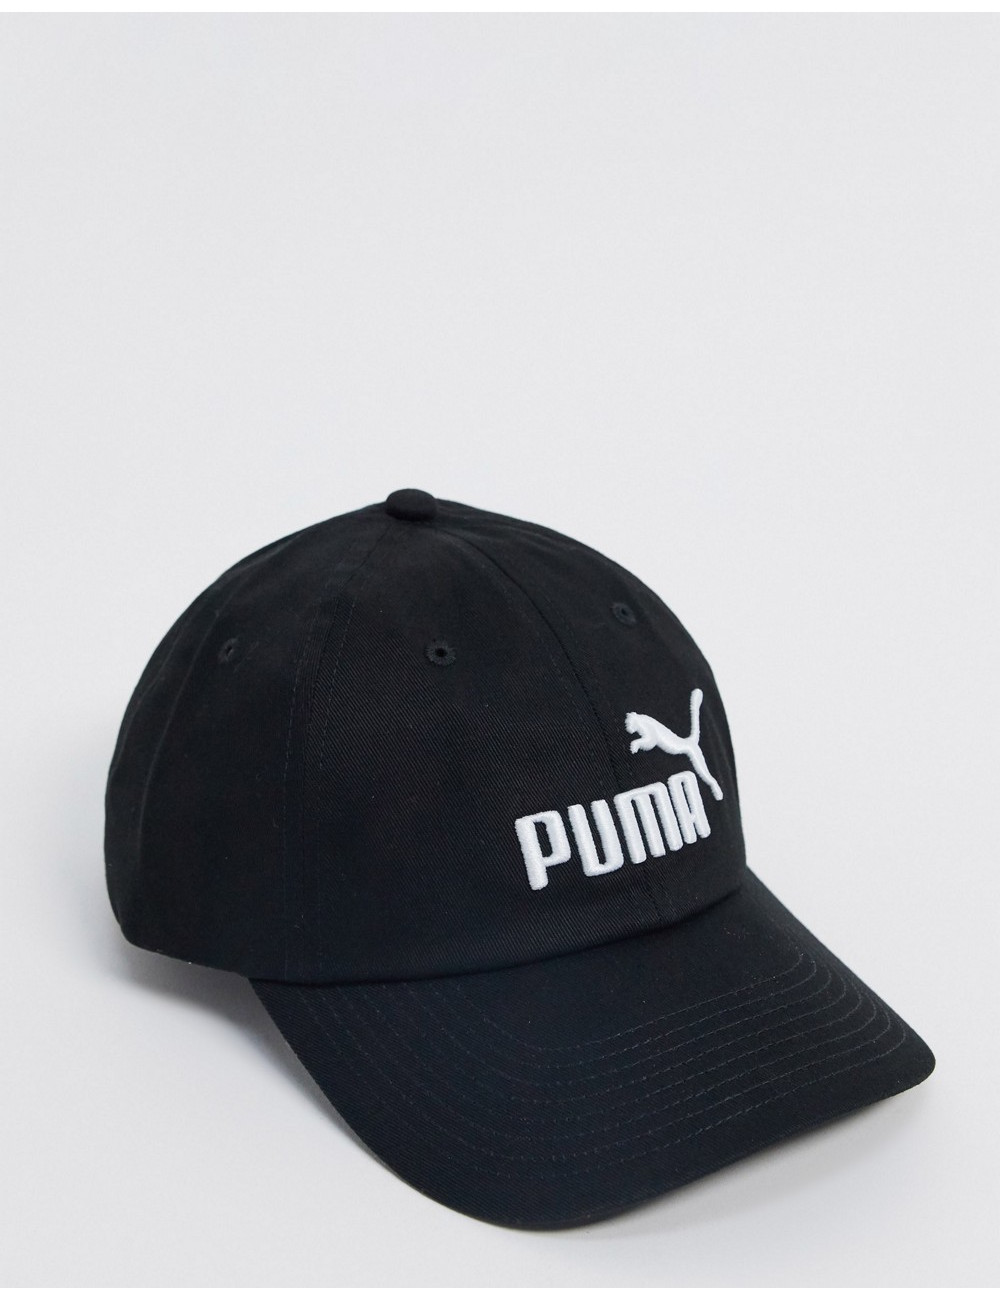 Puma Ess cap in black